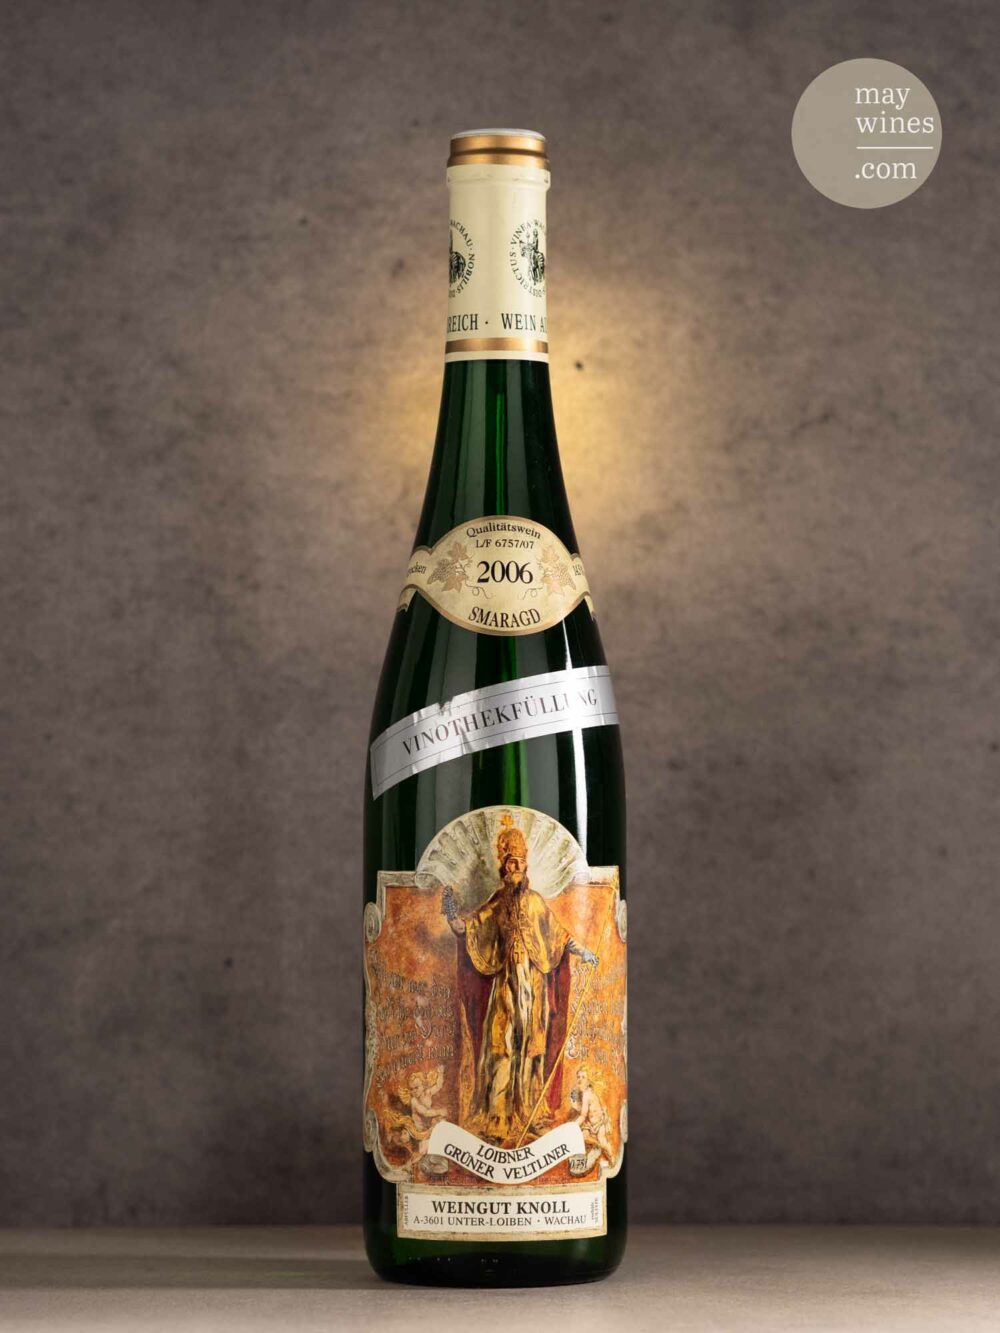 May Wines – Weißwein – 2006 Vinothekfüllung Grüner Veltliner Smaragd - Weingut Knoll